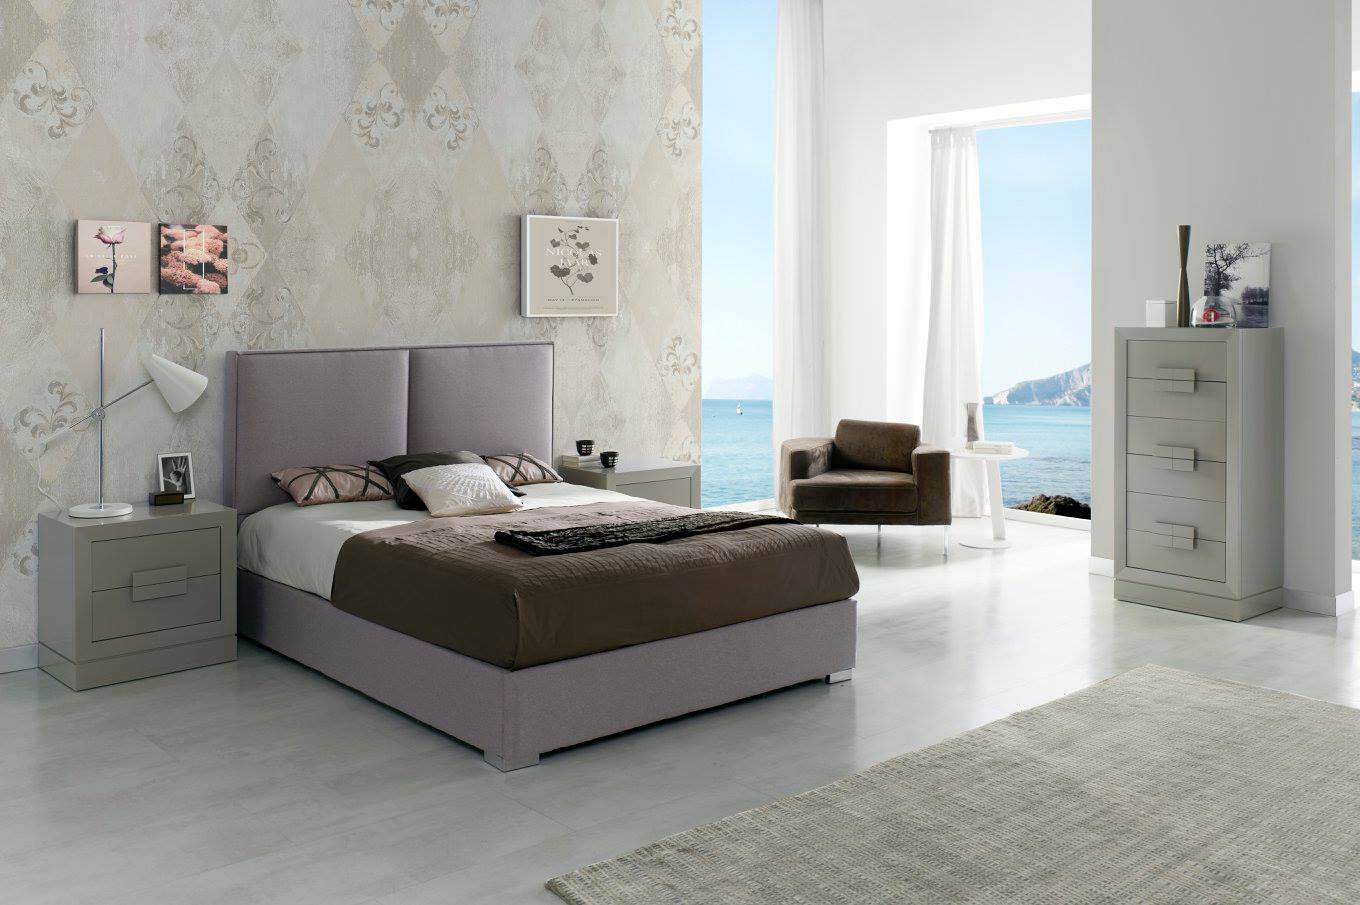 Cama Abatible LD Andrea - Cama con canapé abatible tapizada en polipiel, tela o terciopelo,  disponible en varios tamaños y colores.